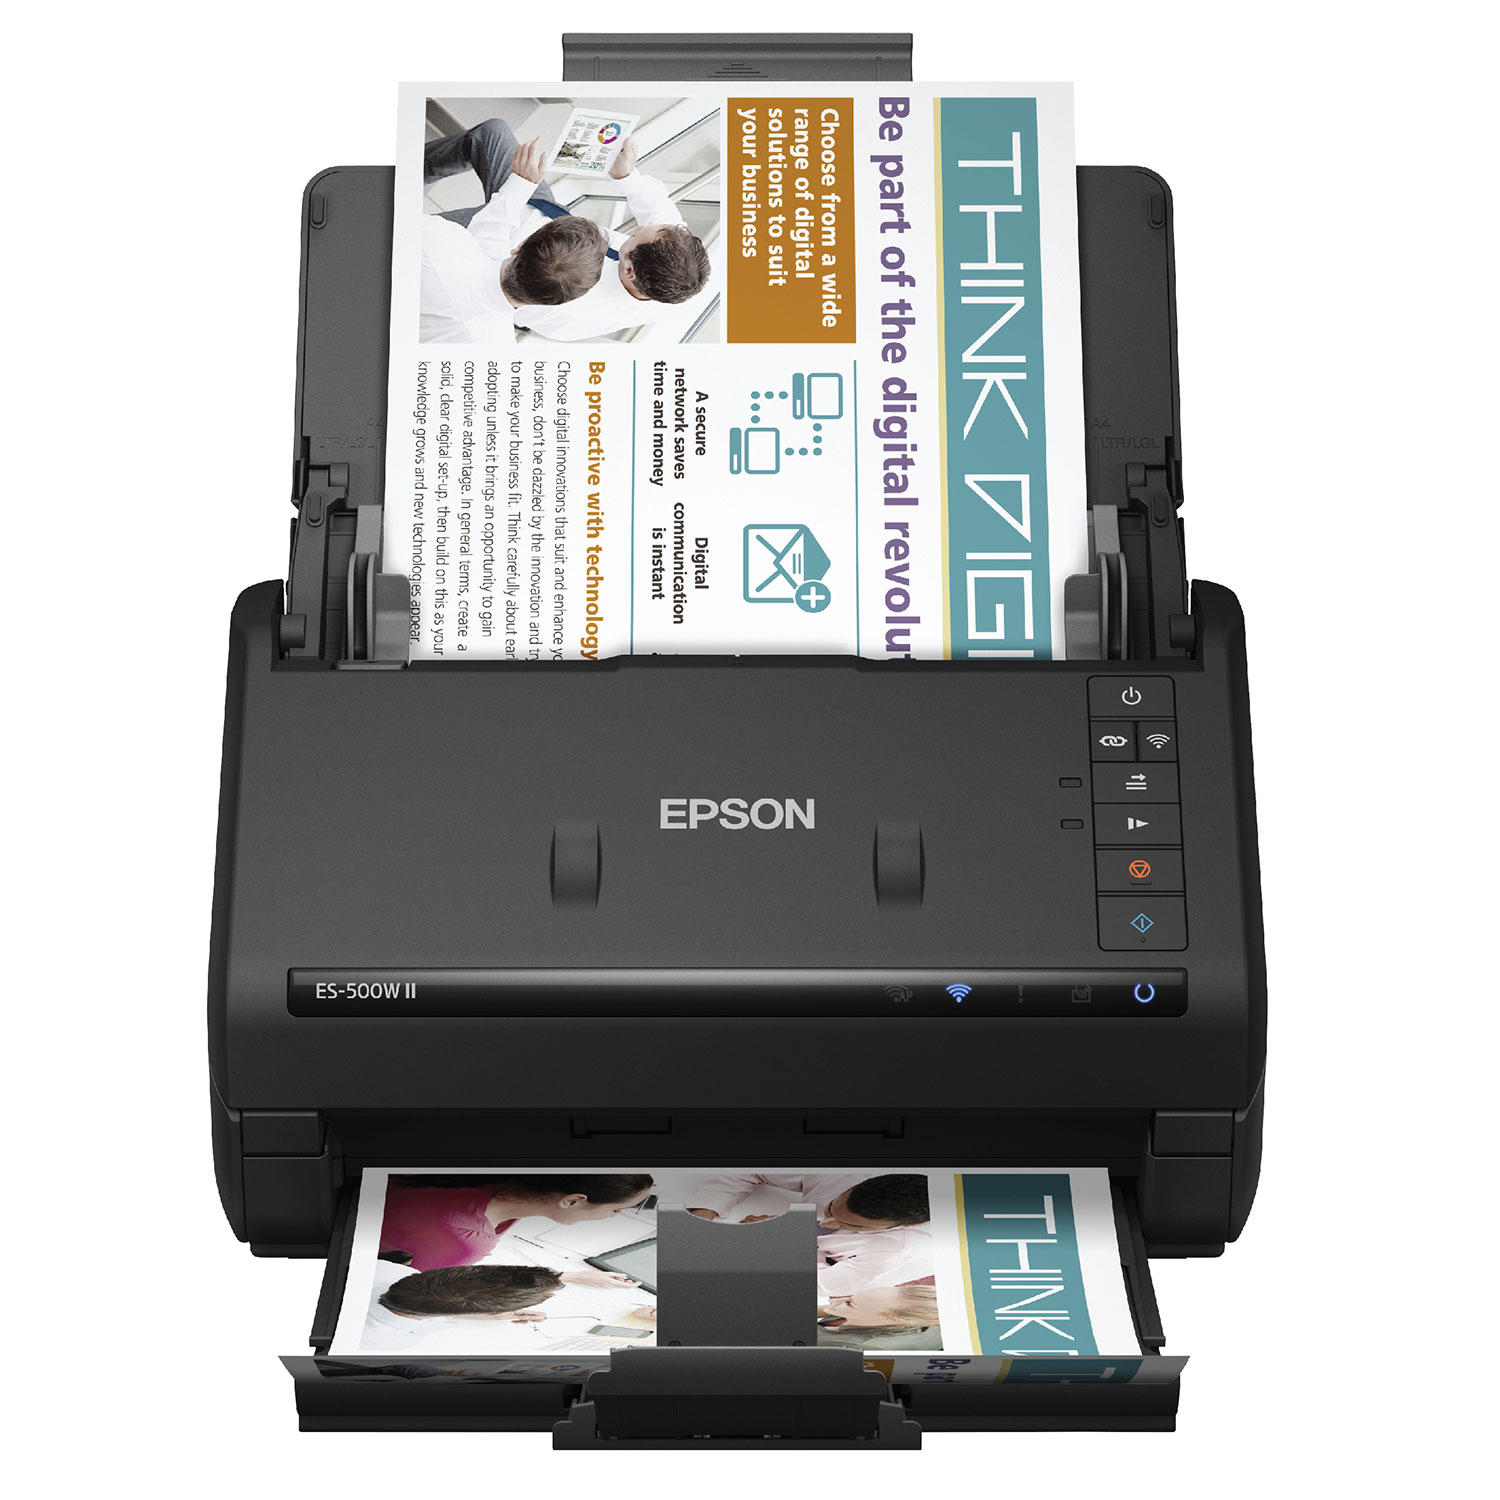 Epson WorkForce ES-500W II Wireless Scanner, 50-Sheet Duplex Auto Document Feeder